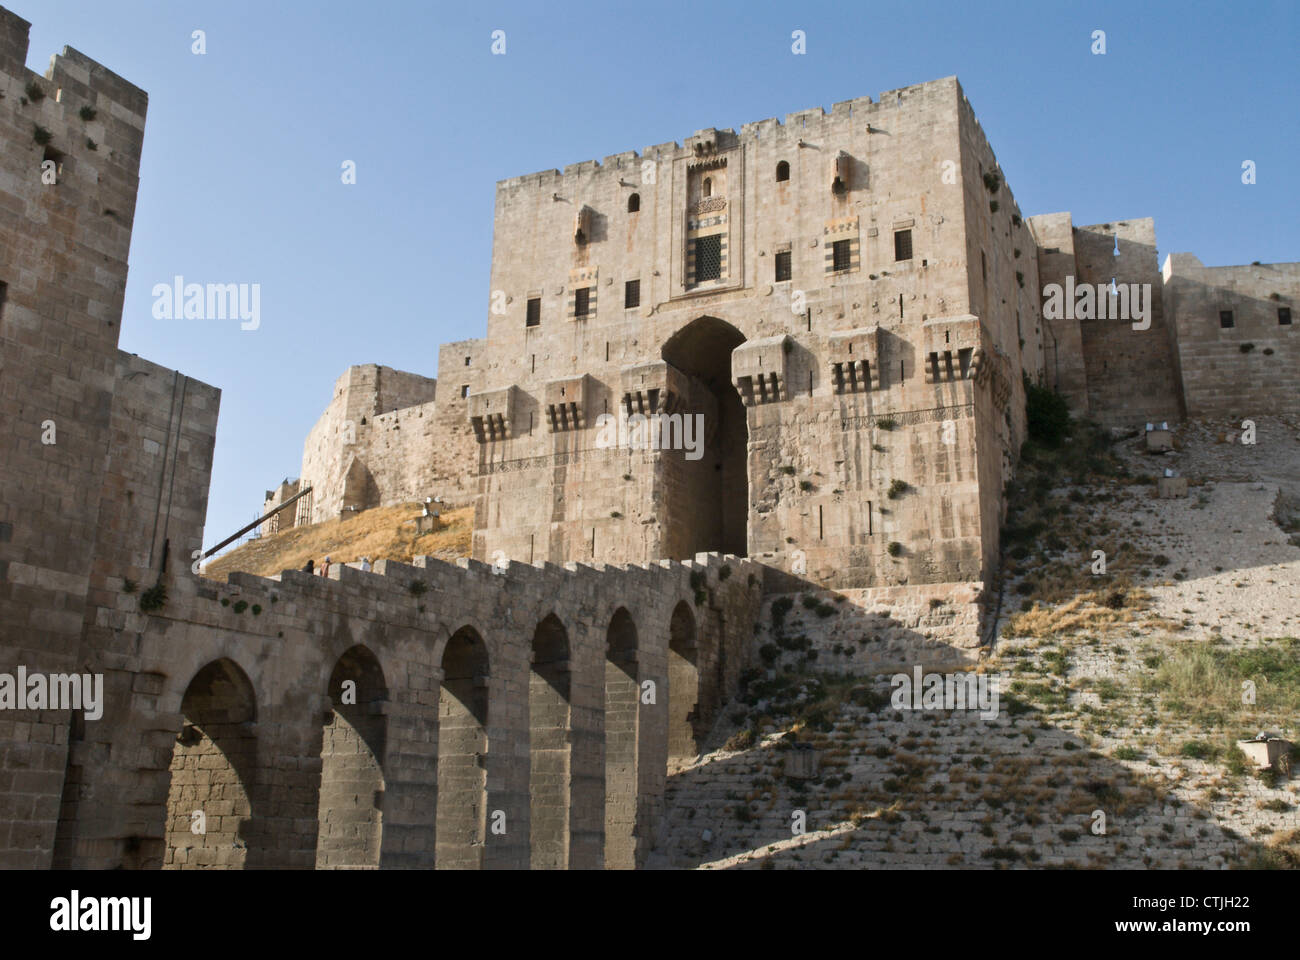 La rampe d'entrée et porte de la Citadelle, Alep, Syrie. Site du patrimoine mondial de l'UNESCO Banque D'Images